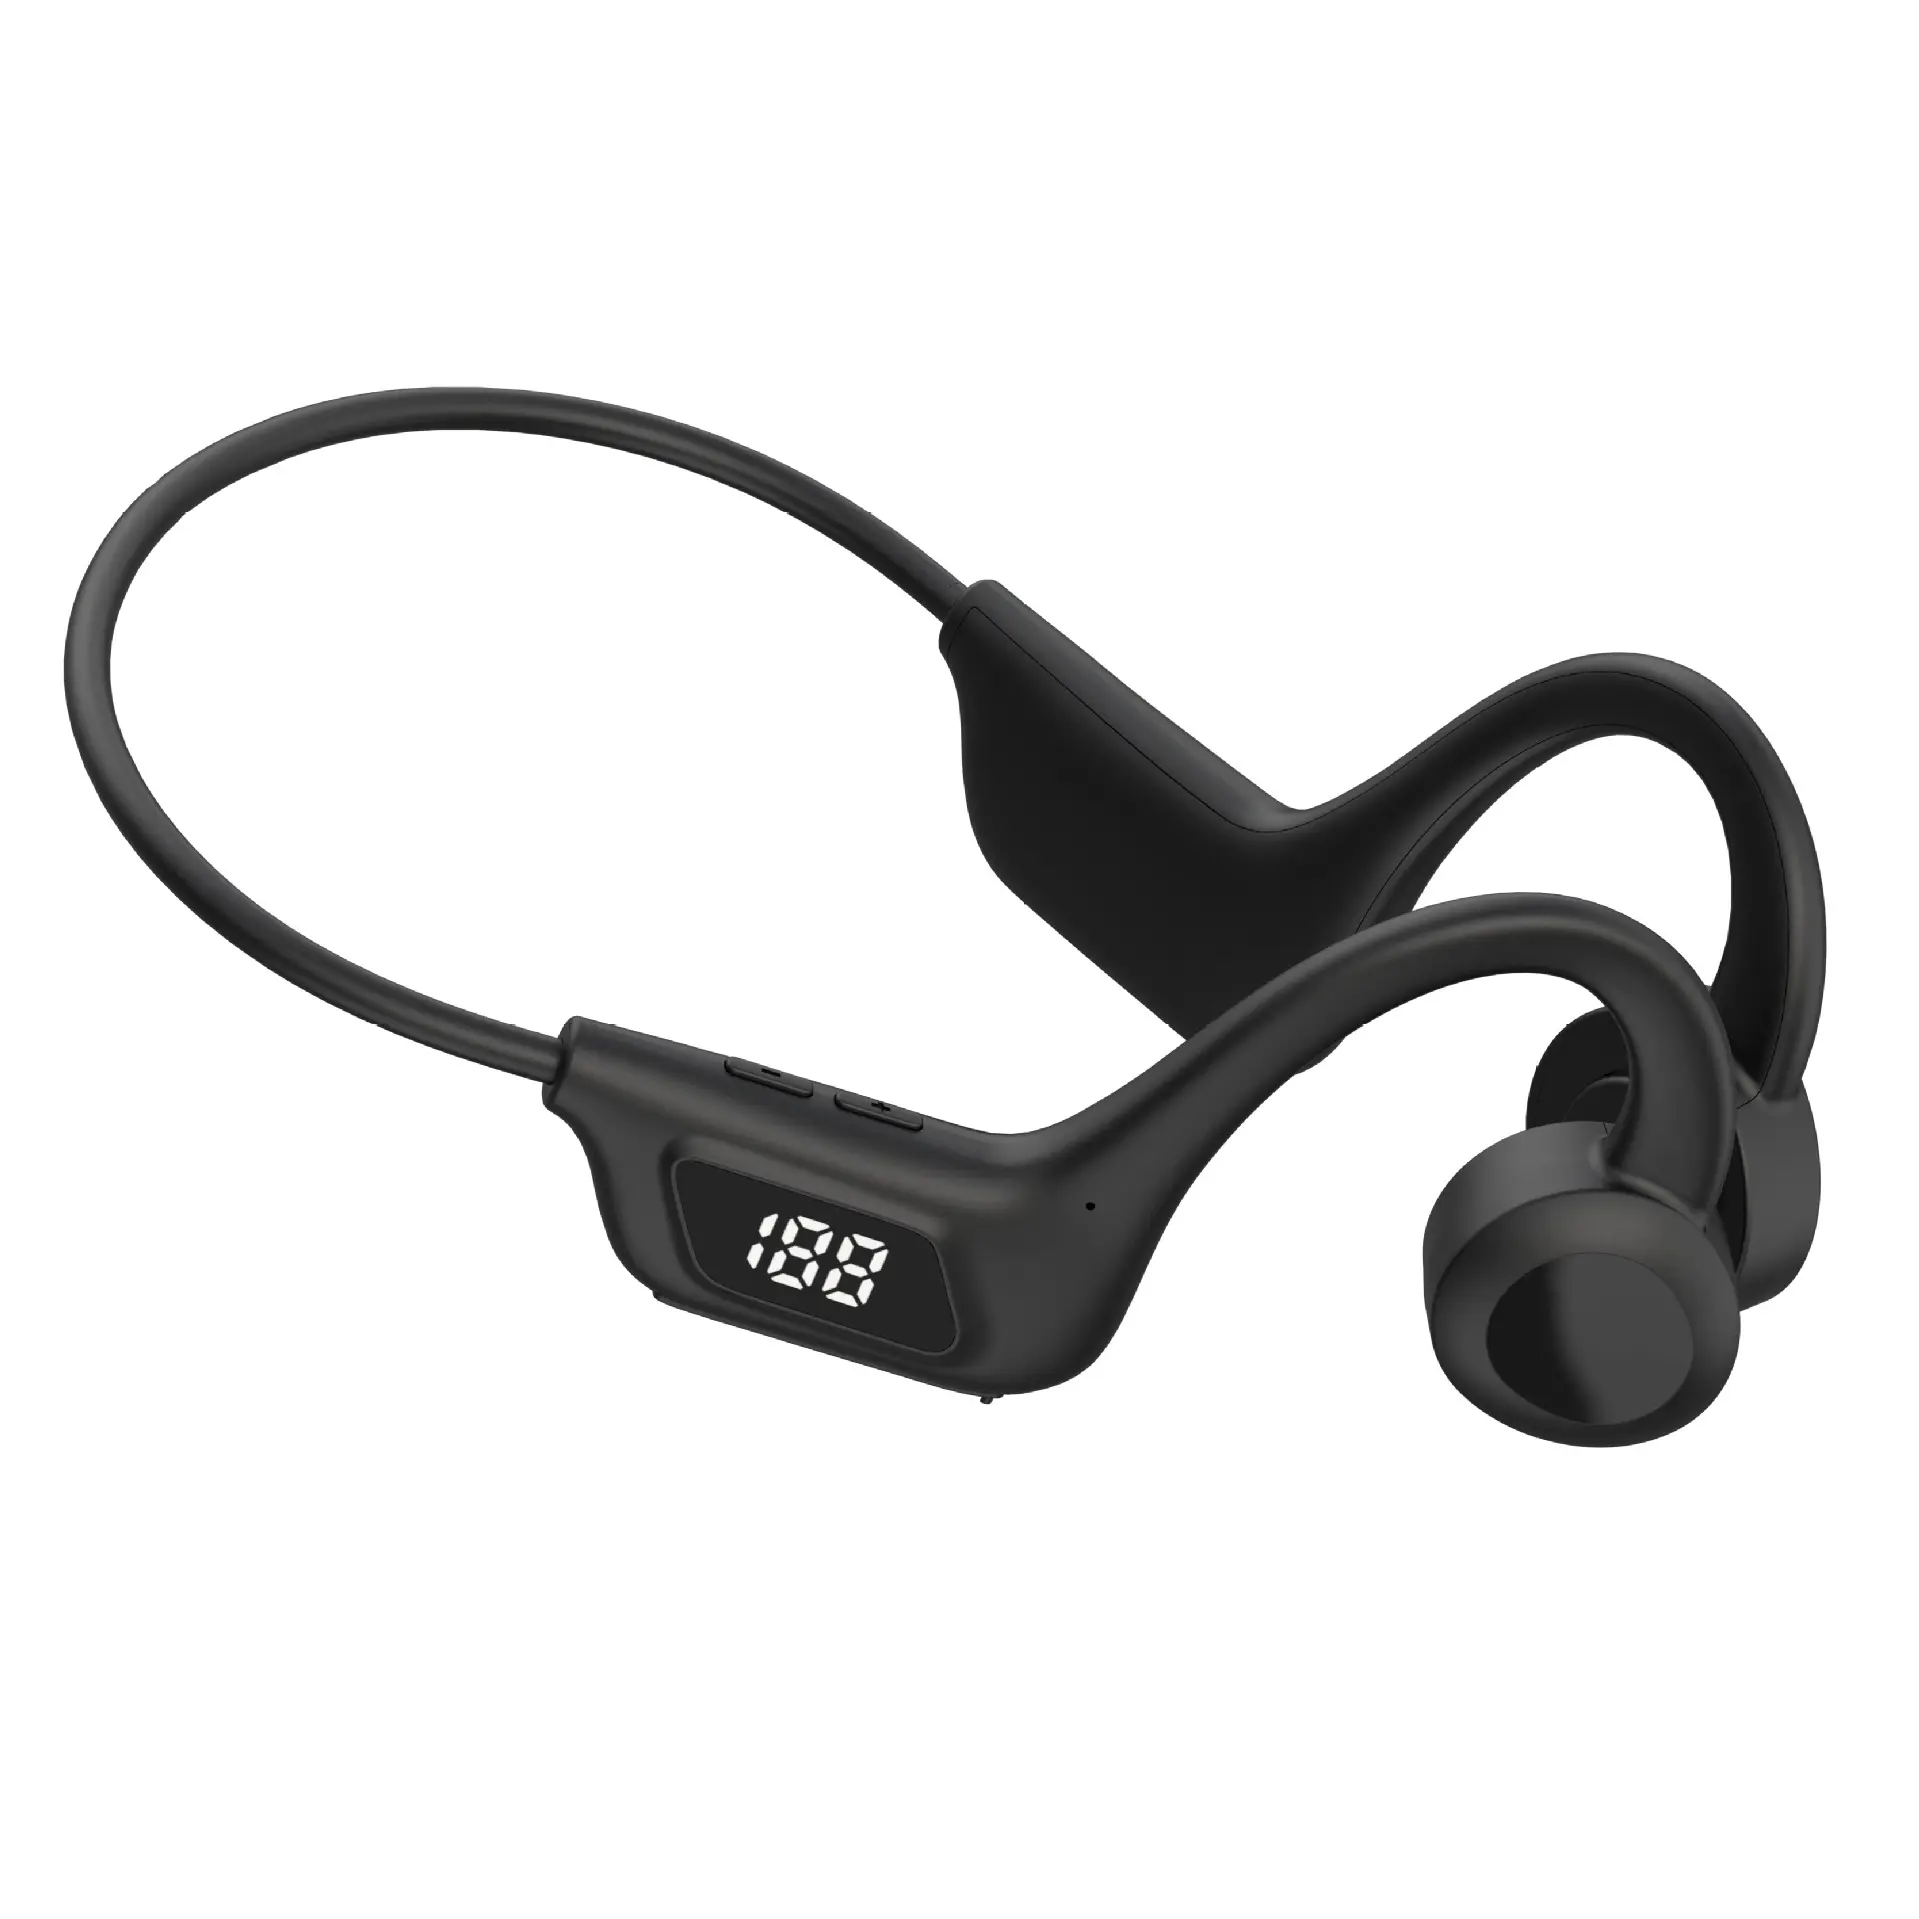 Novo produto U9 fones de ouvido sem fio com condução óssea, fones de ouvido sem ruído, com cancelamento digital, fones de ouvido esportivos